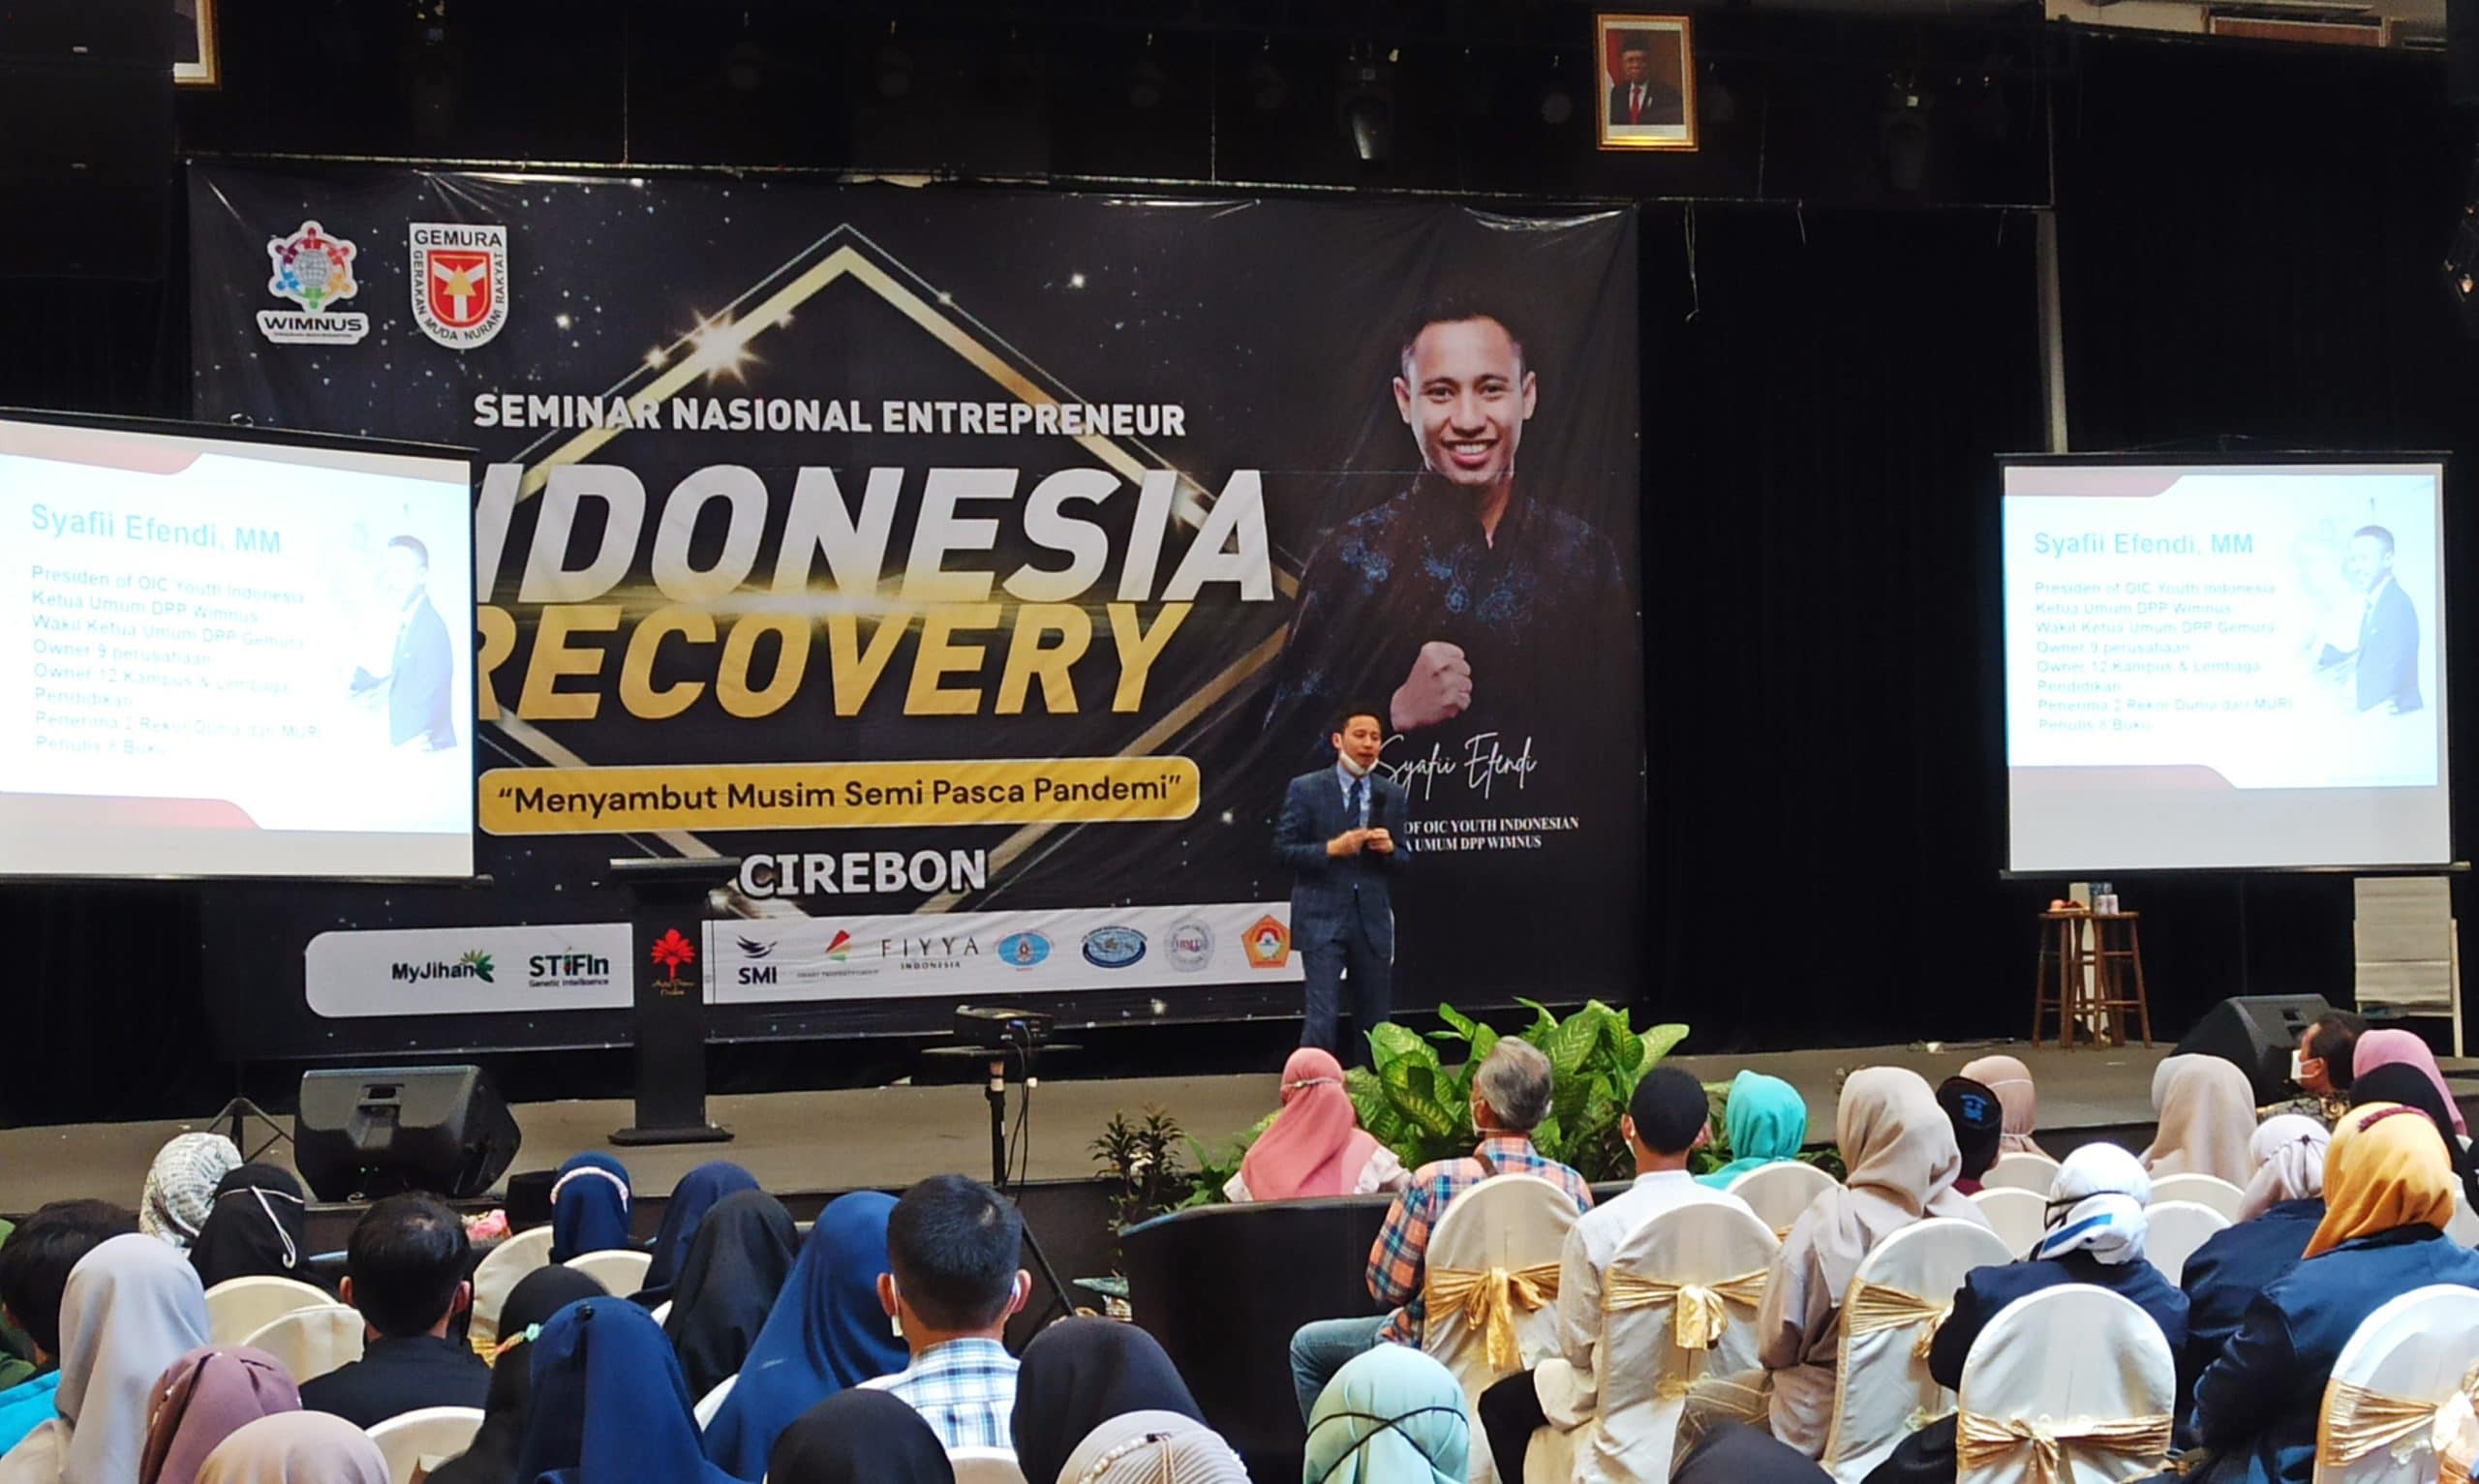 Seminar Indonesia Recovery bersama Wimnus